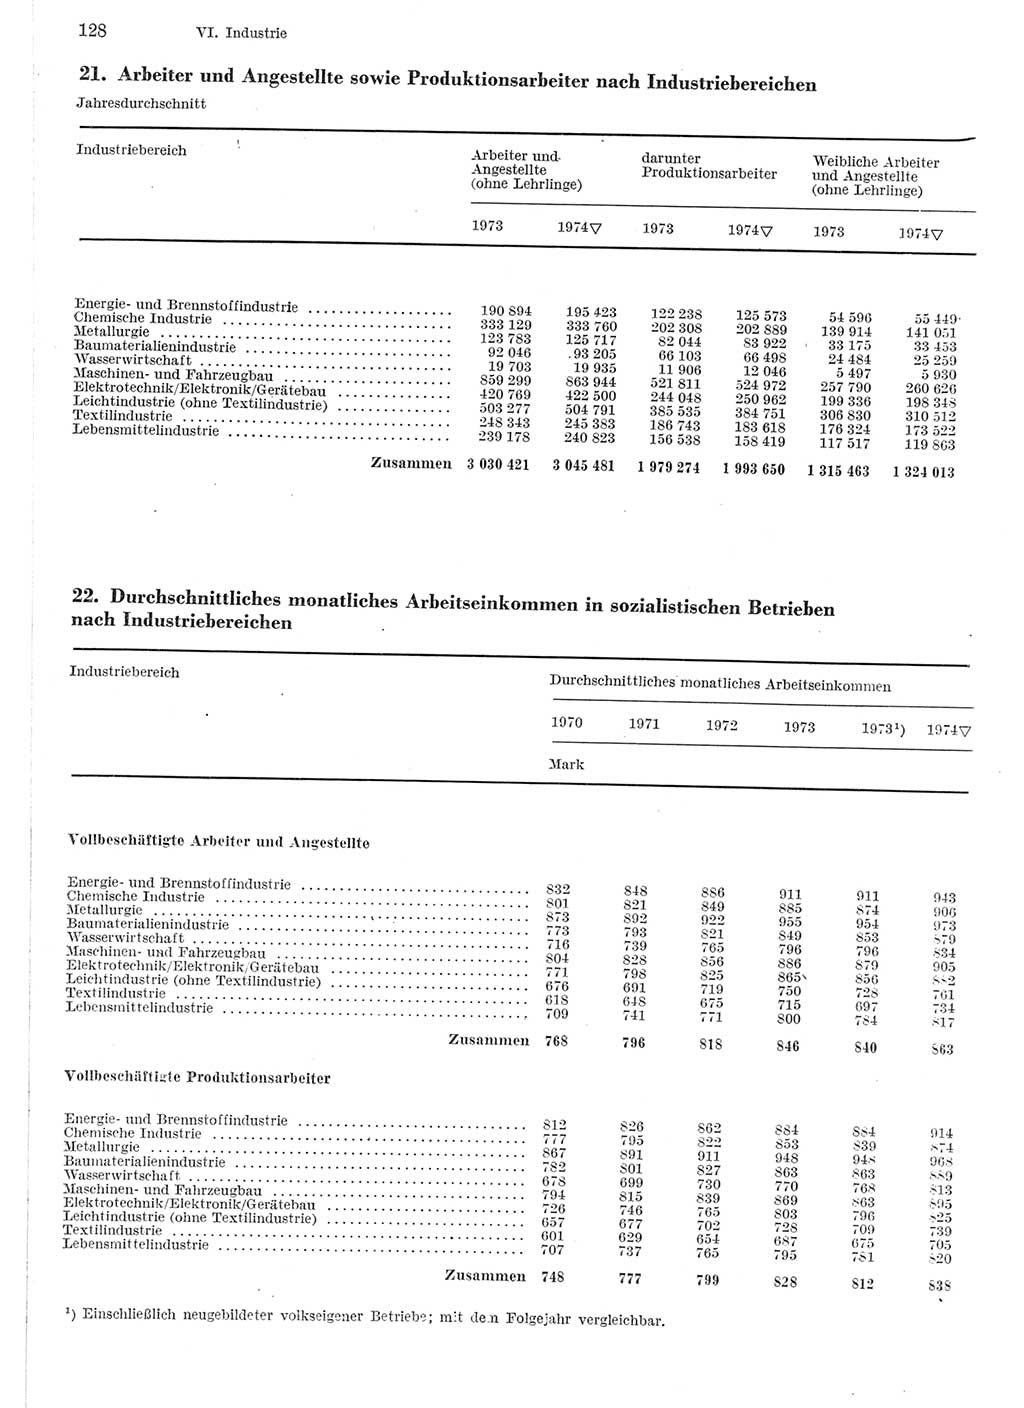 Statistisches Jahrbuch der Deutschen Demokratischen Republik (DDR) 1975, Seite 128 (Stat. Jb. DDR 1975, S. 128)